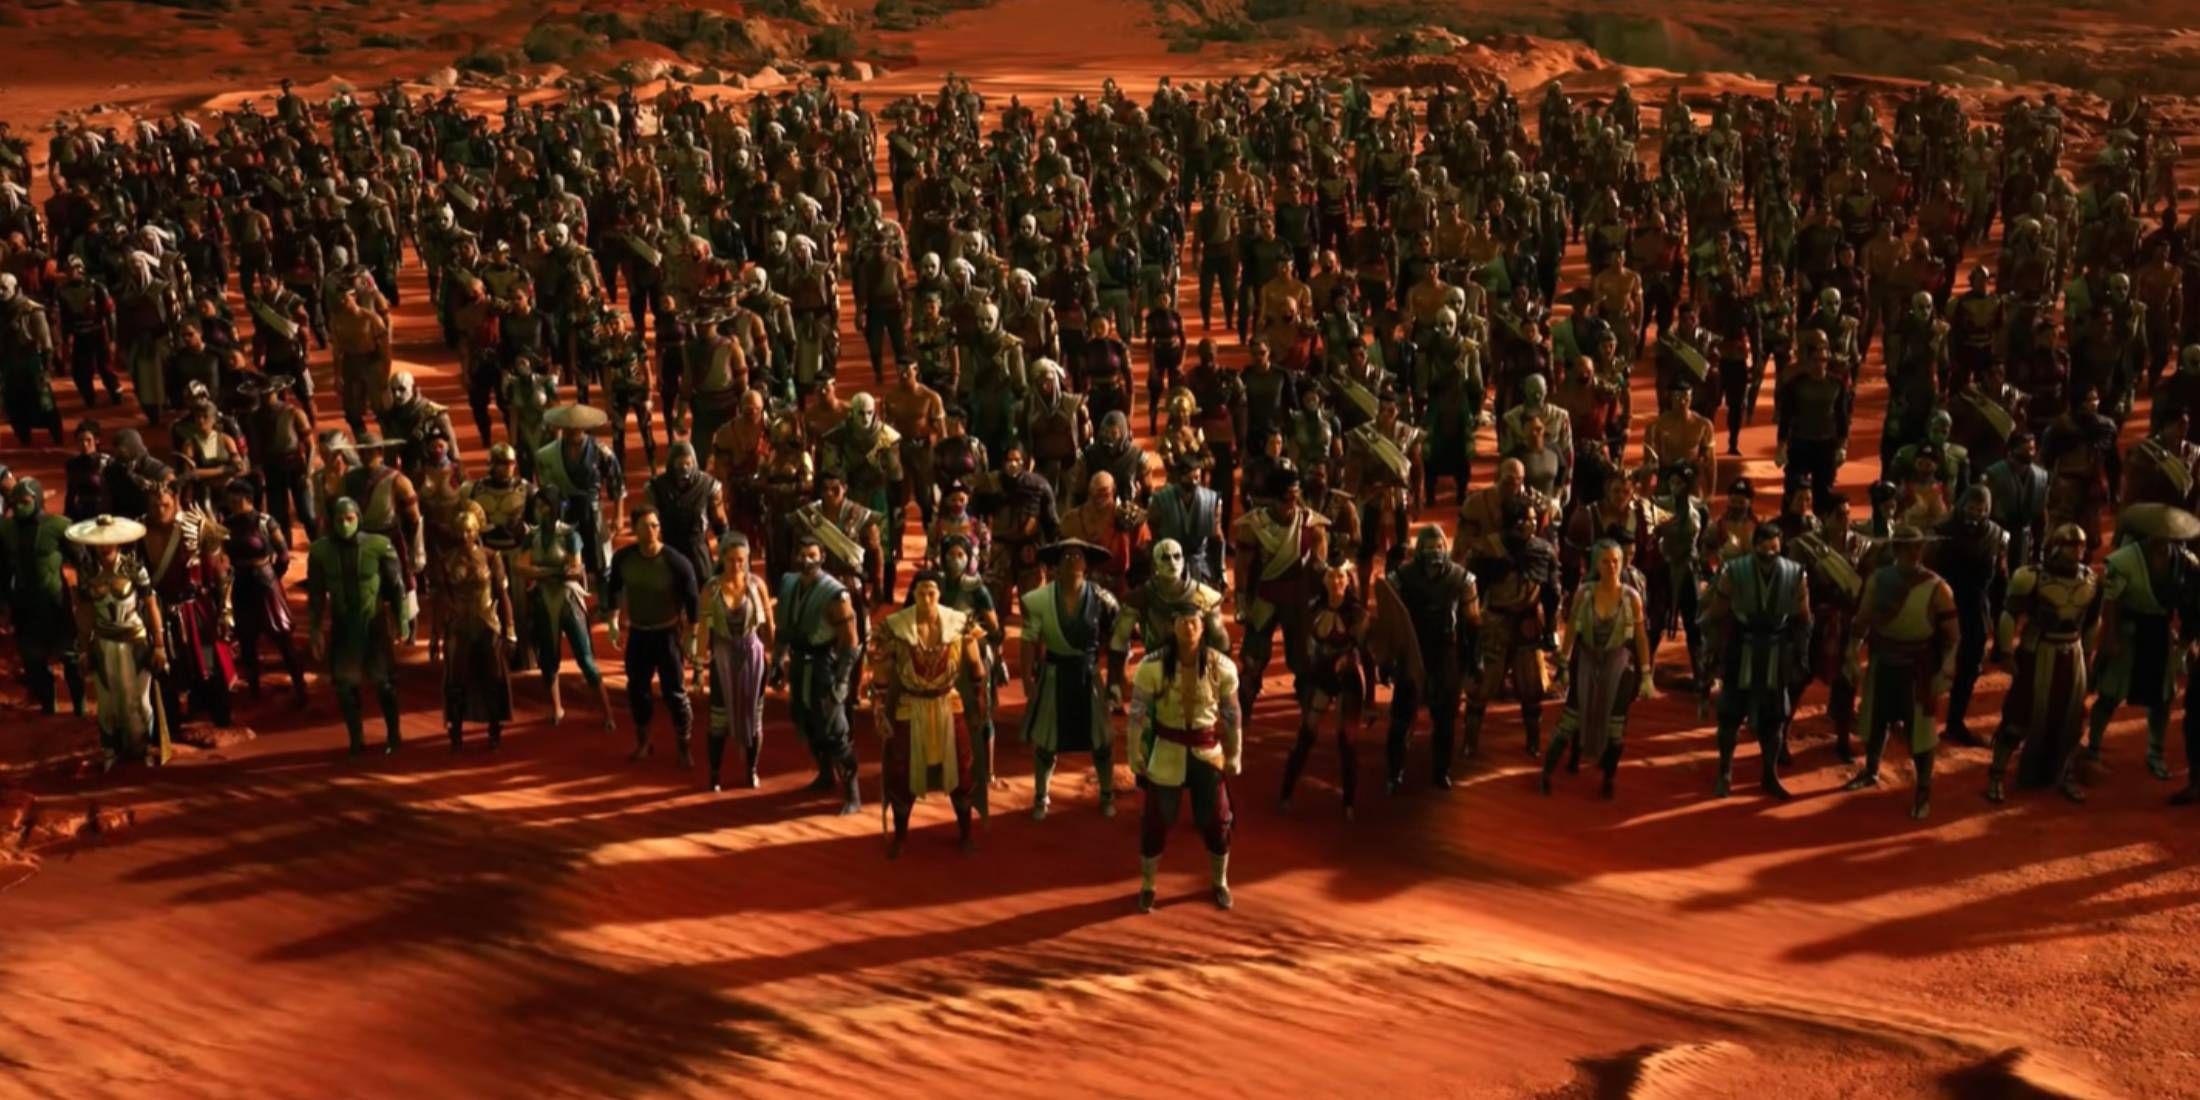 Liu Kang's army of heroes from Mortal Kombat 1